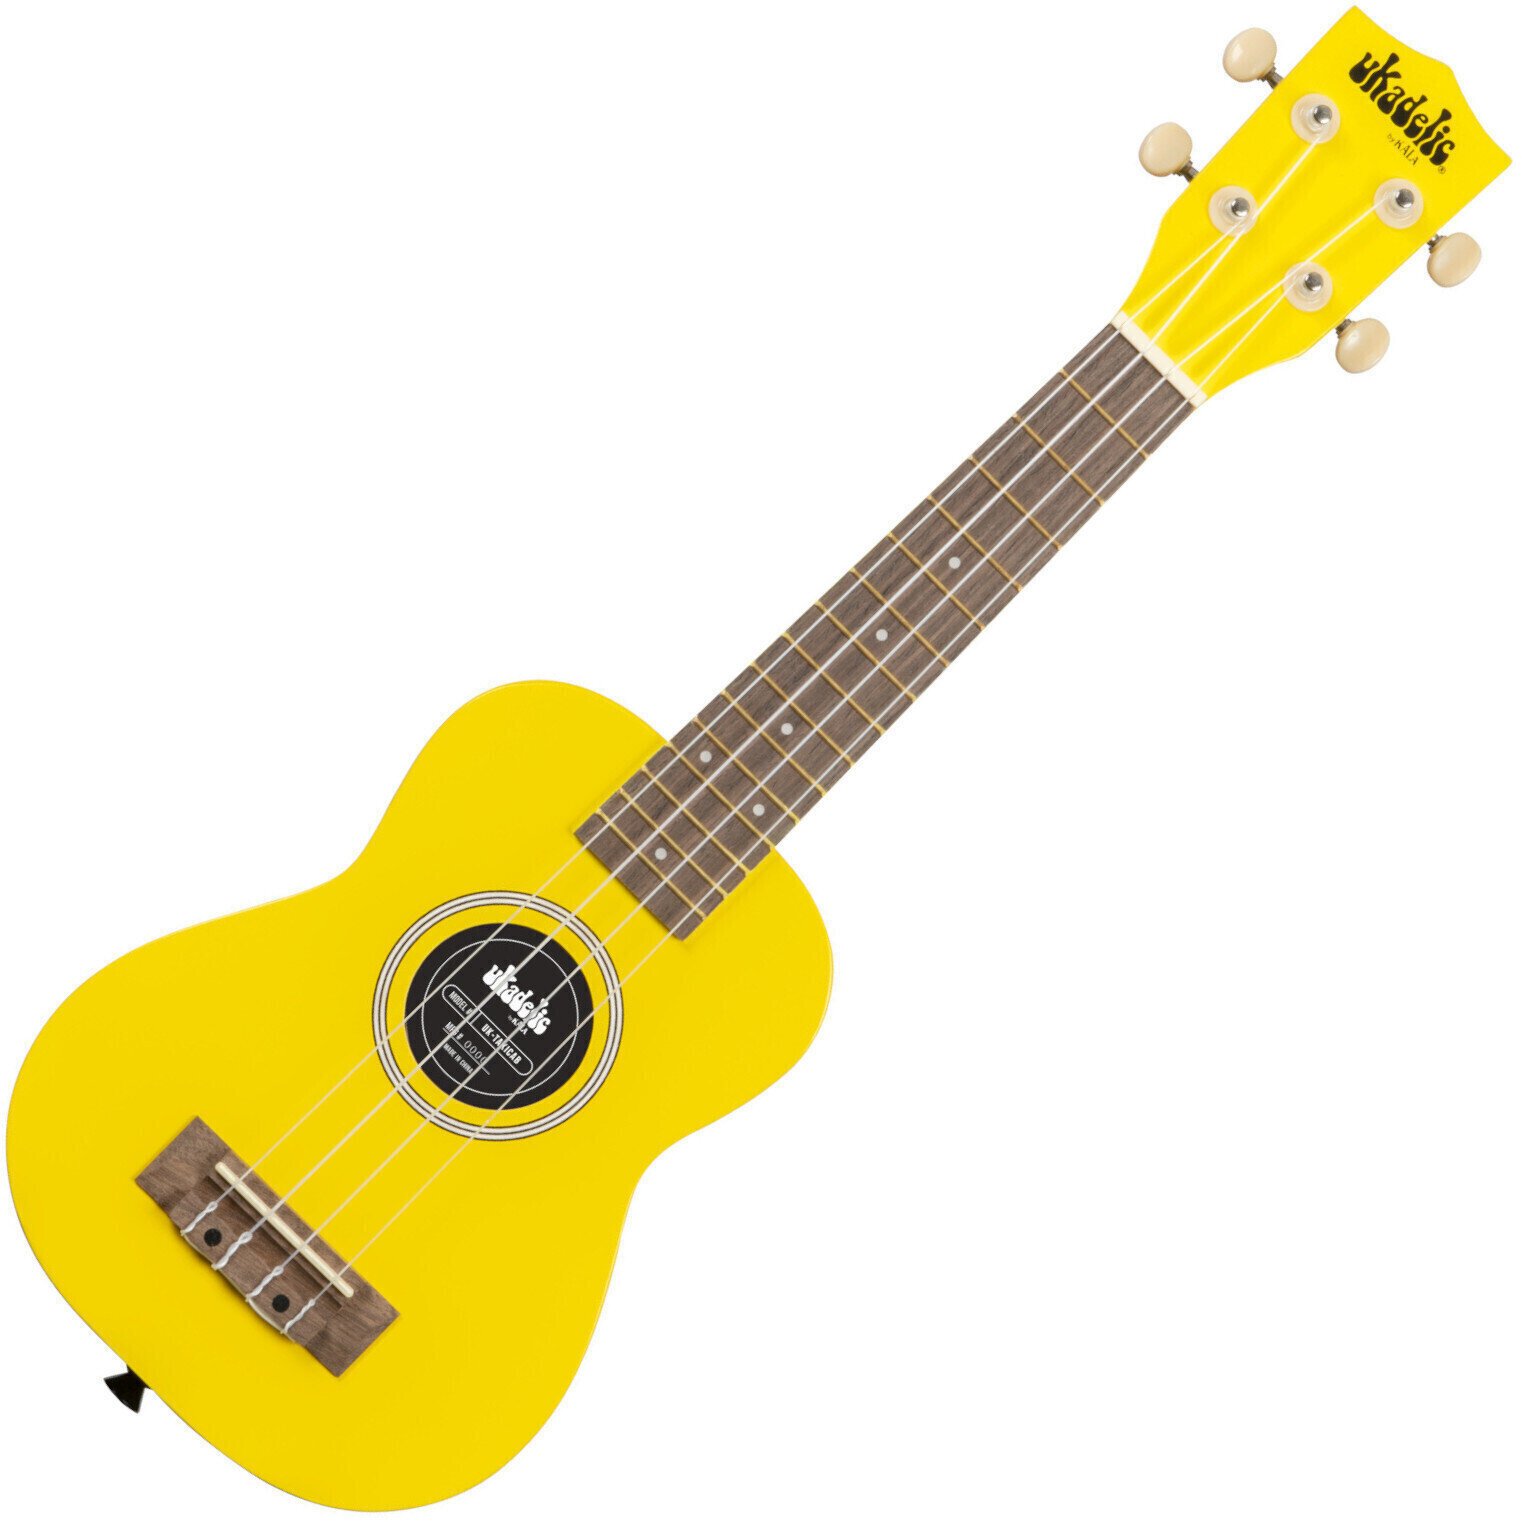 Soprano ukulele Kala KA-UK Soprano ukulele Taxi Cab Yellow